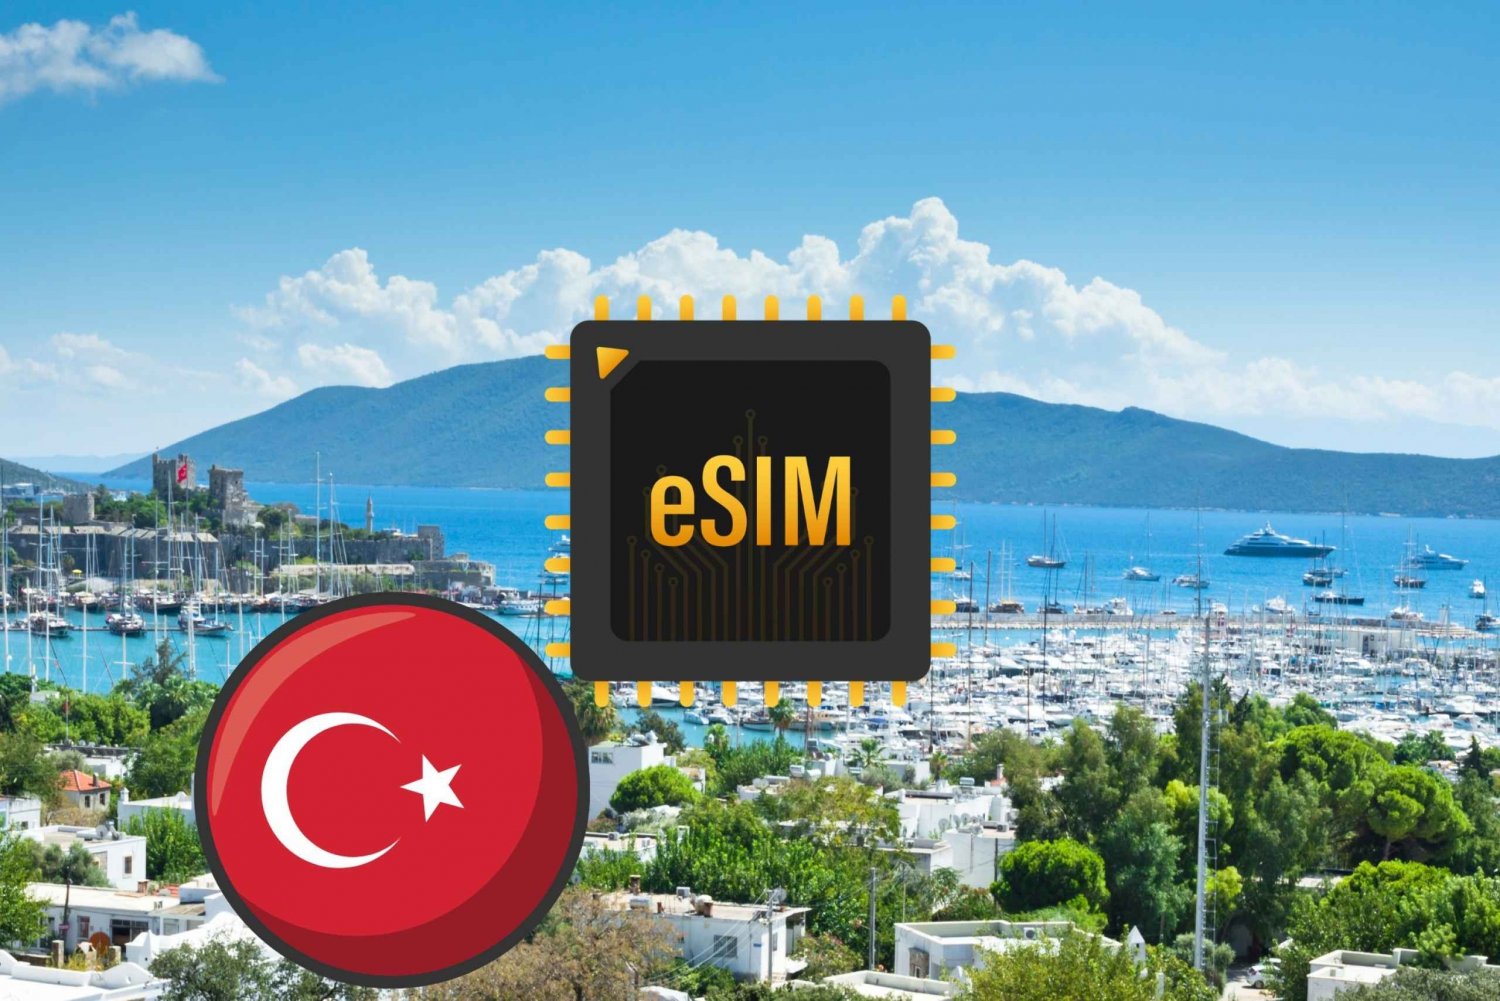 Bodrum: eSIM Internet Data Plan for Turkey high-speed 4G/5G